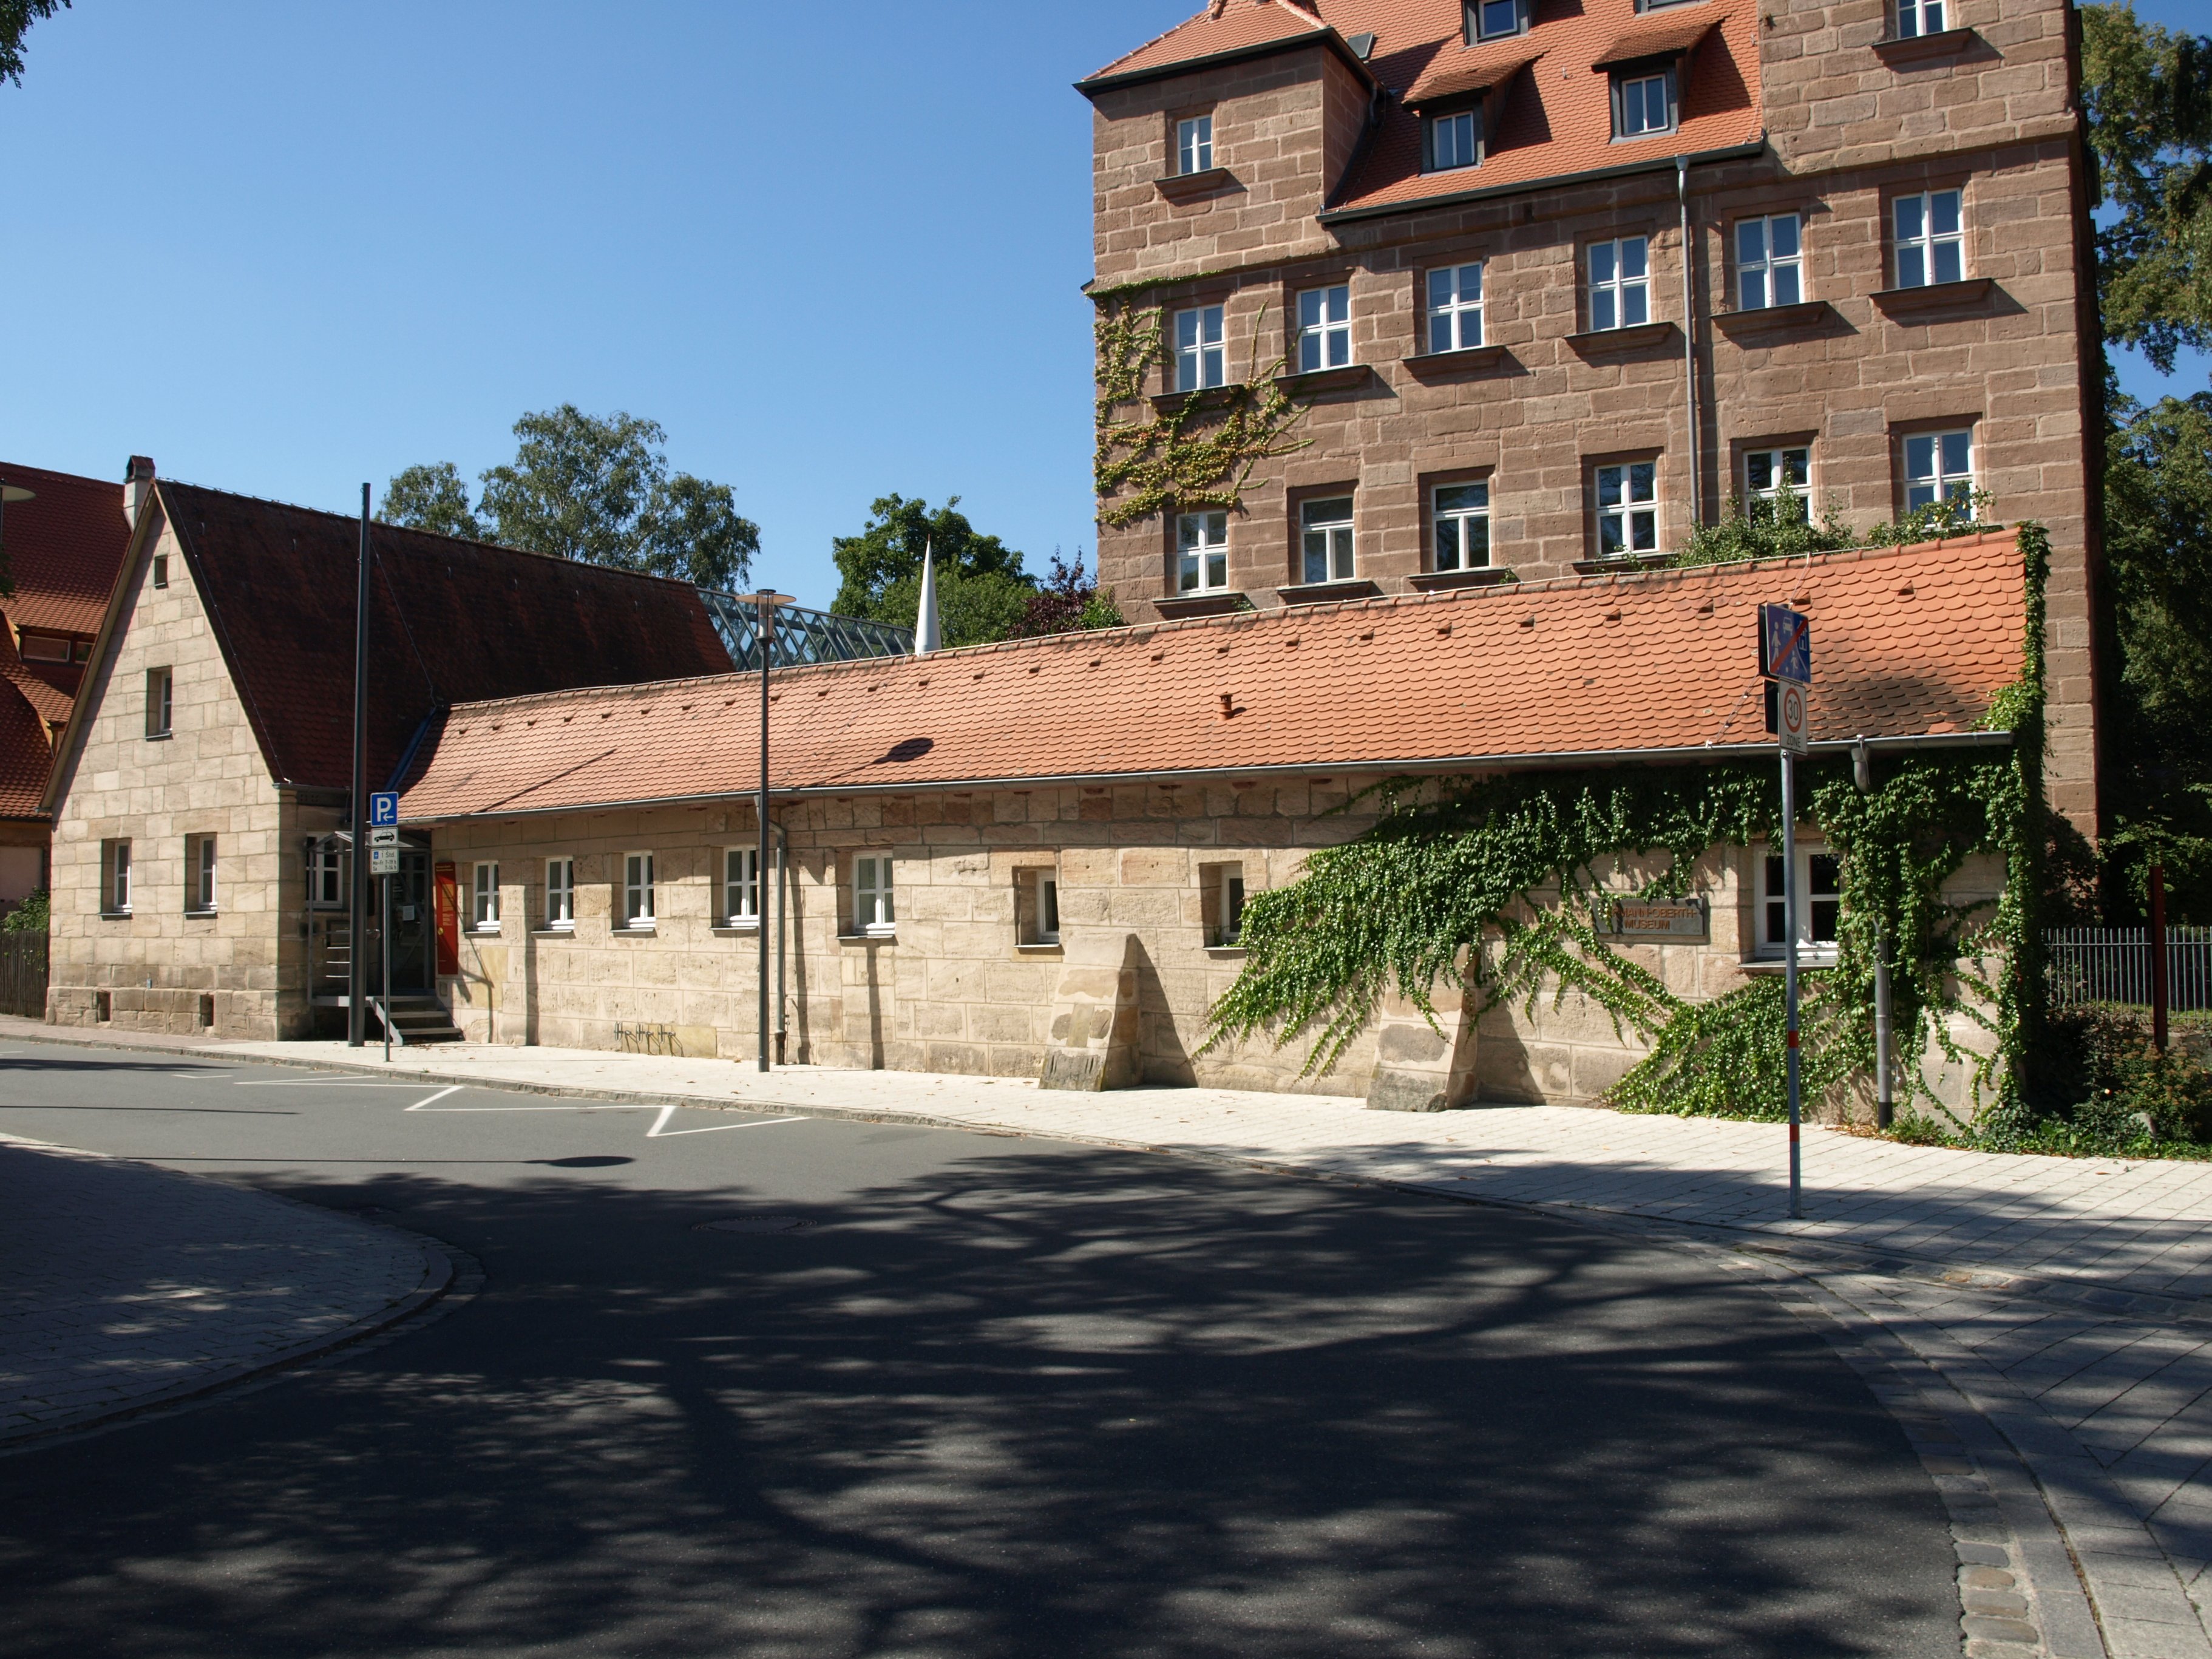 Hermann-Oberth-Raumfahrt Museum